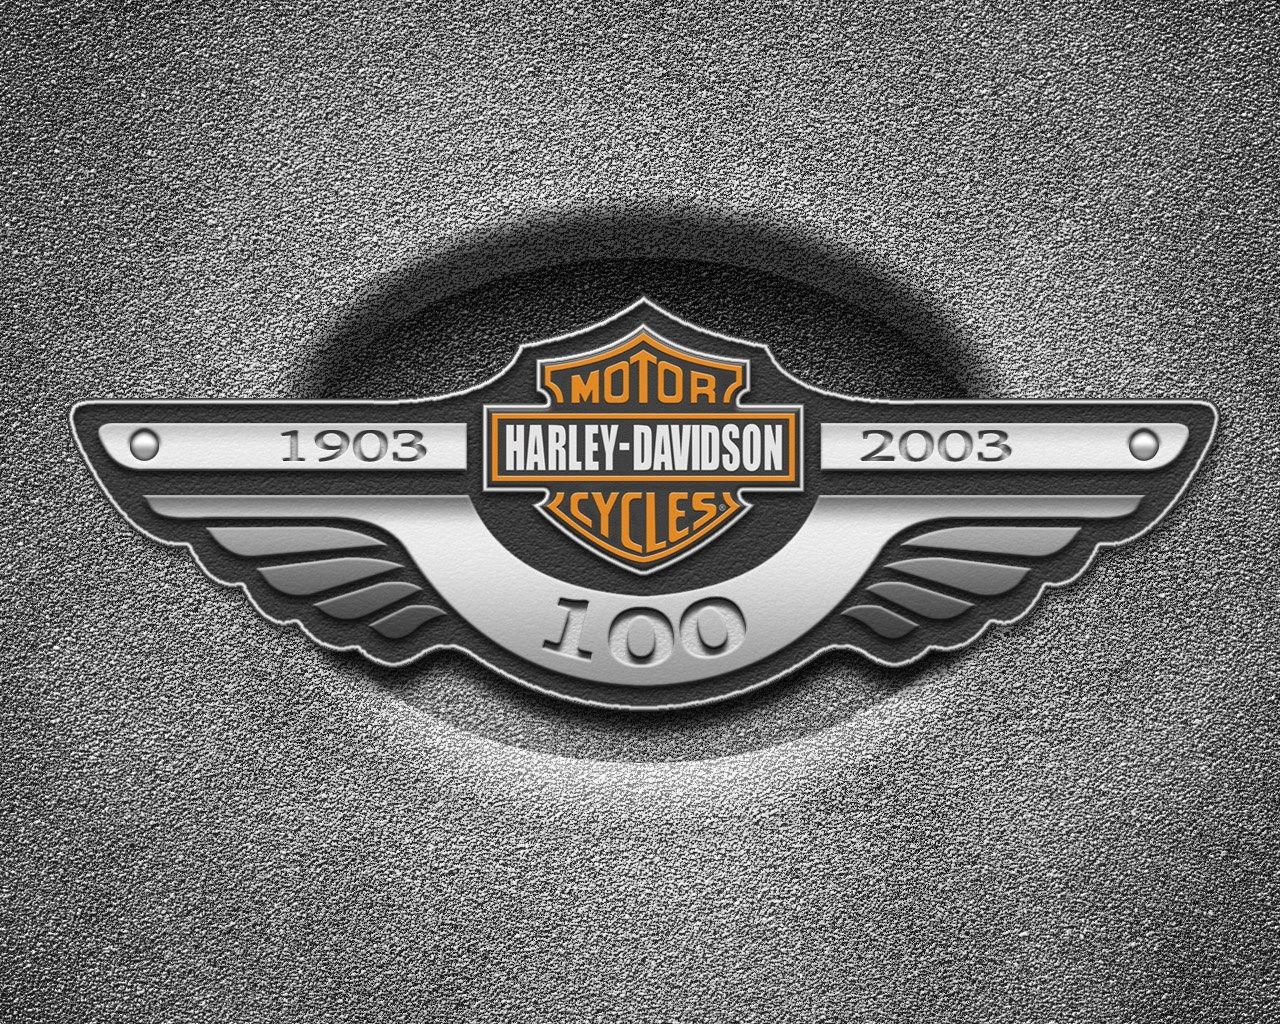 motocycles_harley_davidson_harley_davidson_logo_017071.jpg